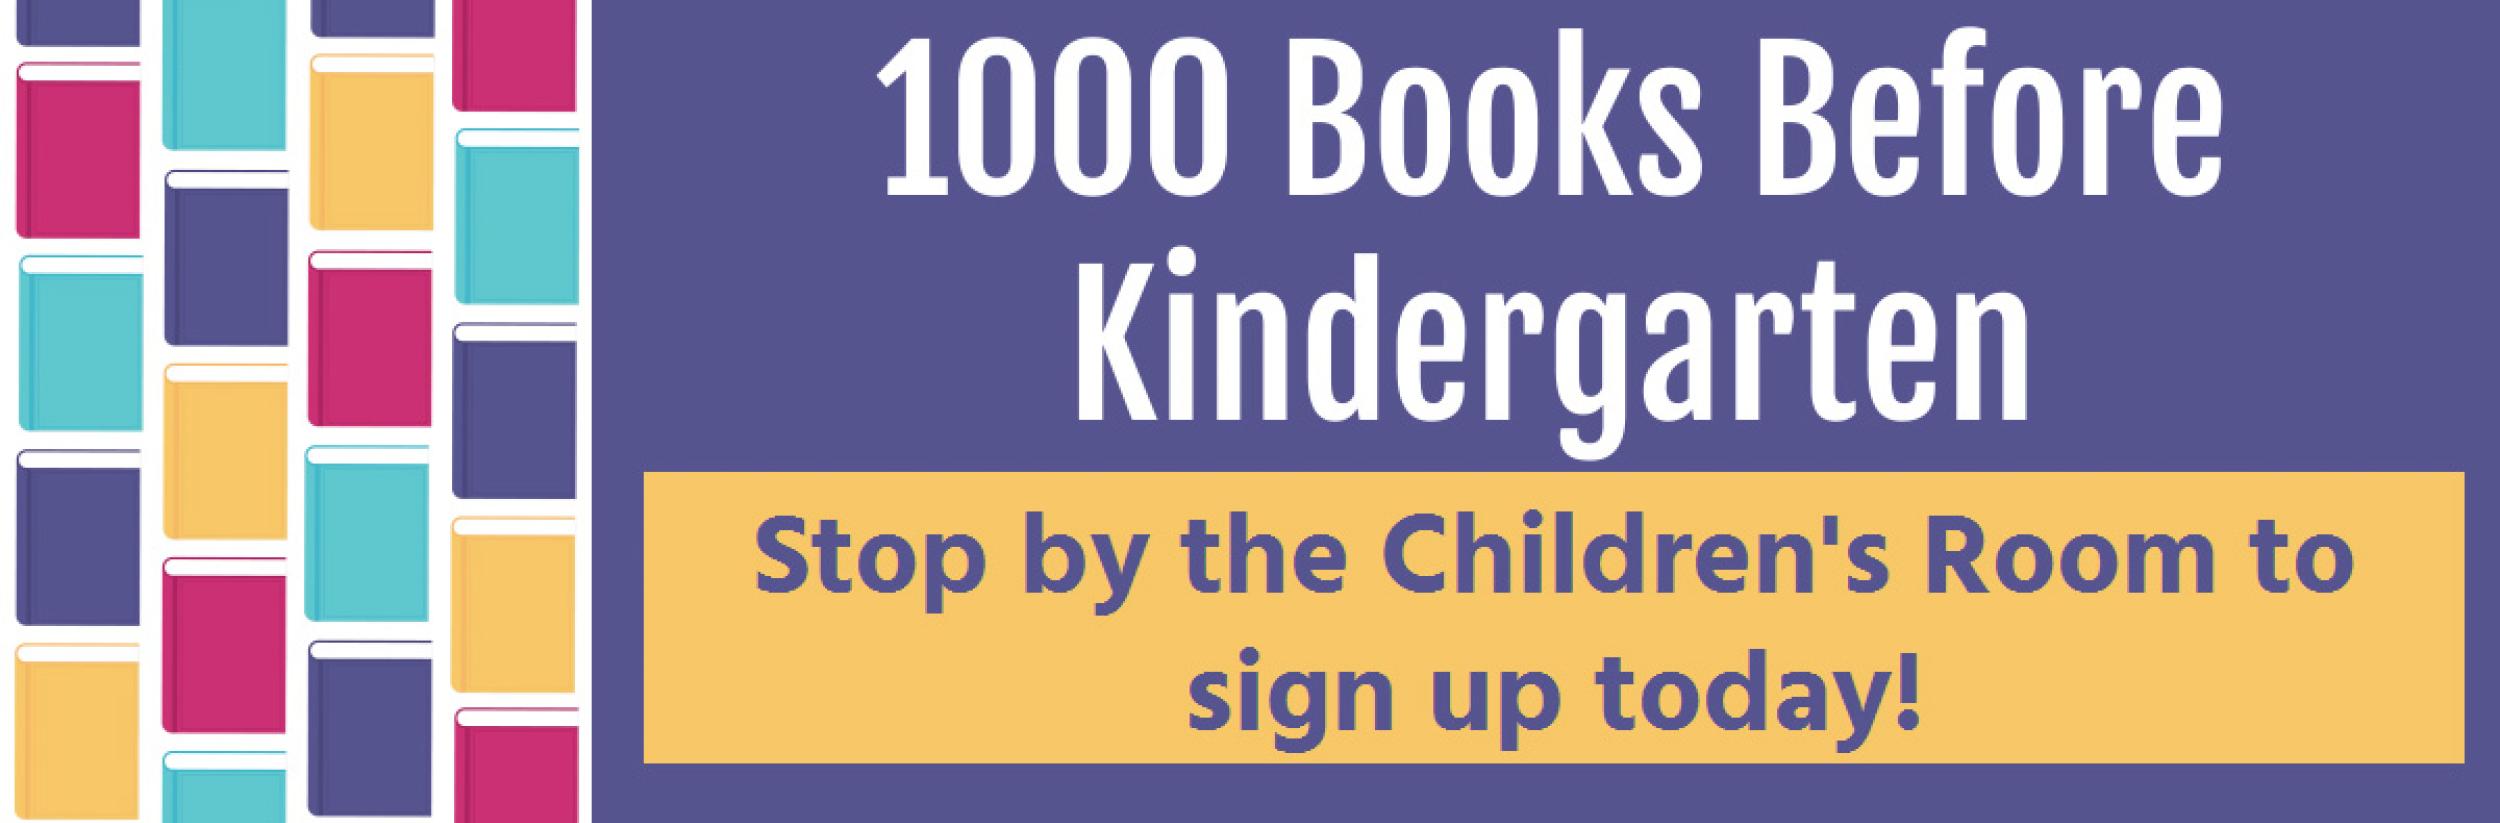 Image for "1000 Books Before Kindergarten"